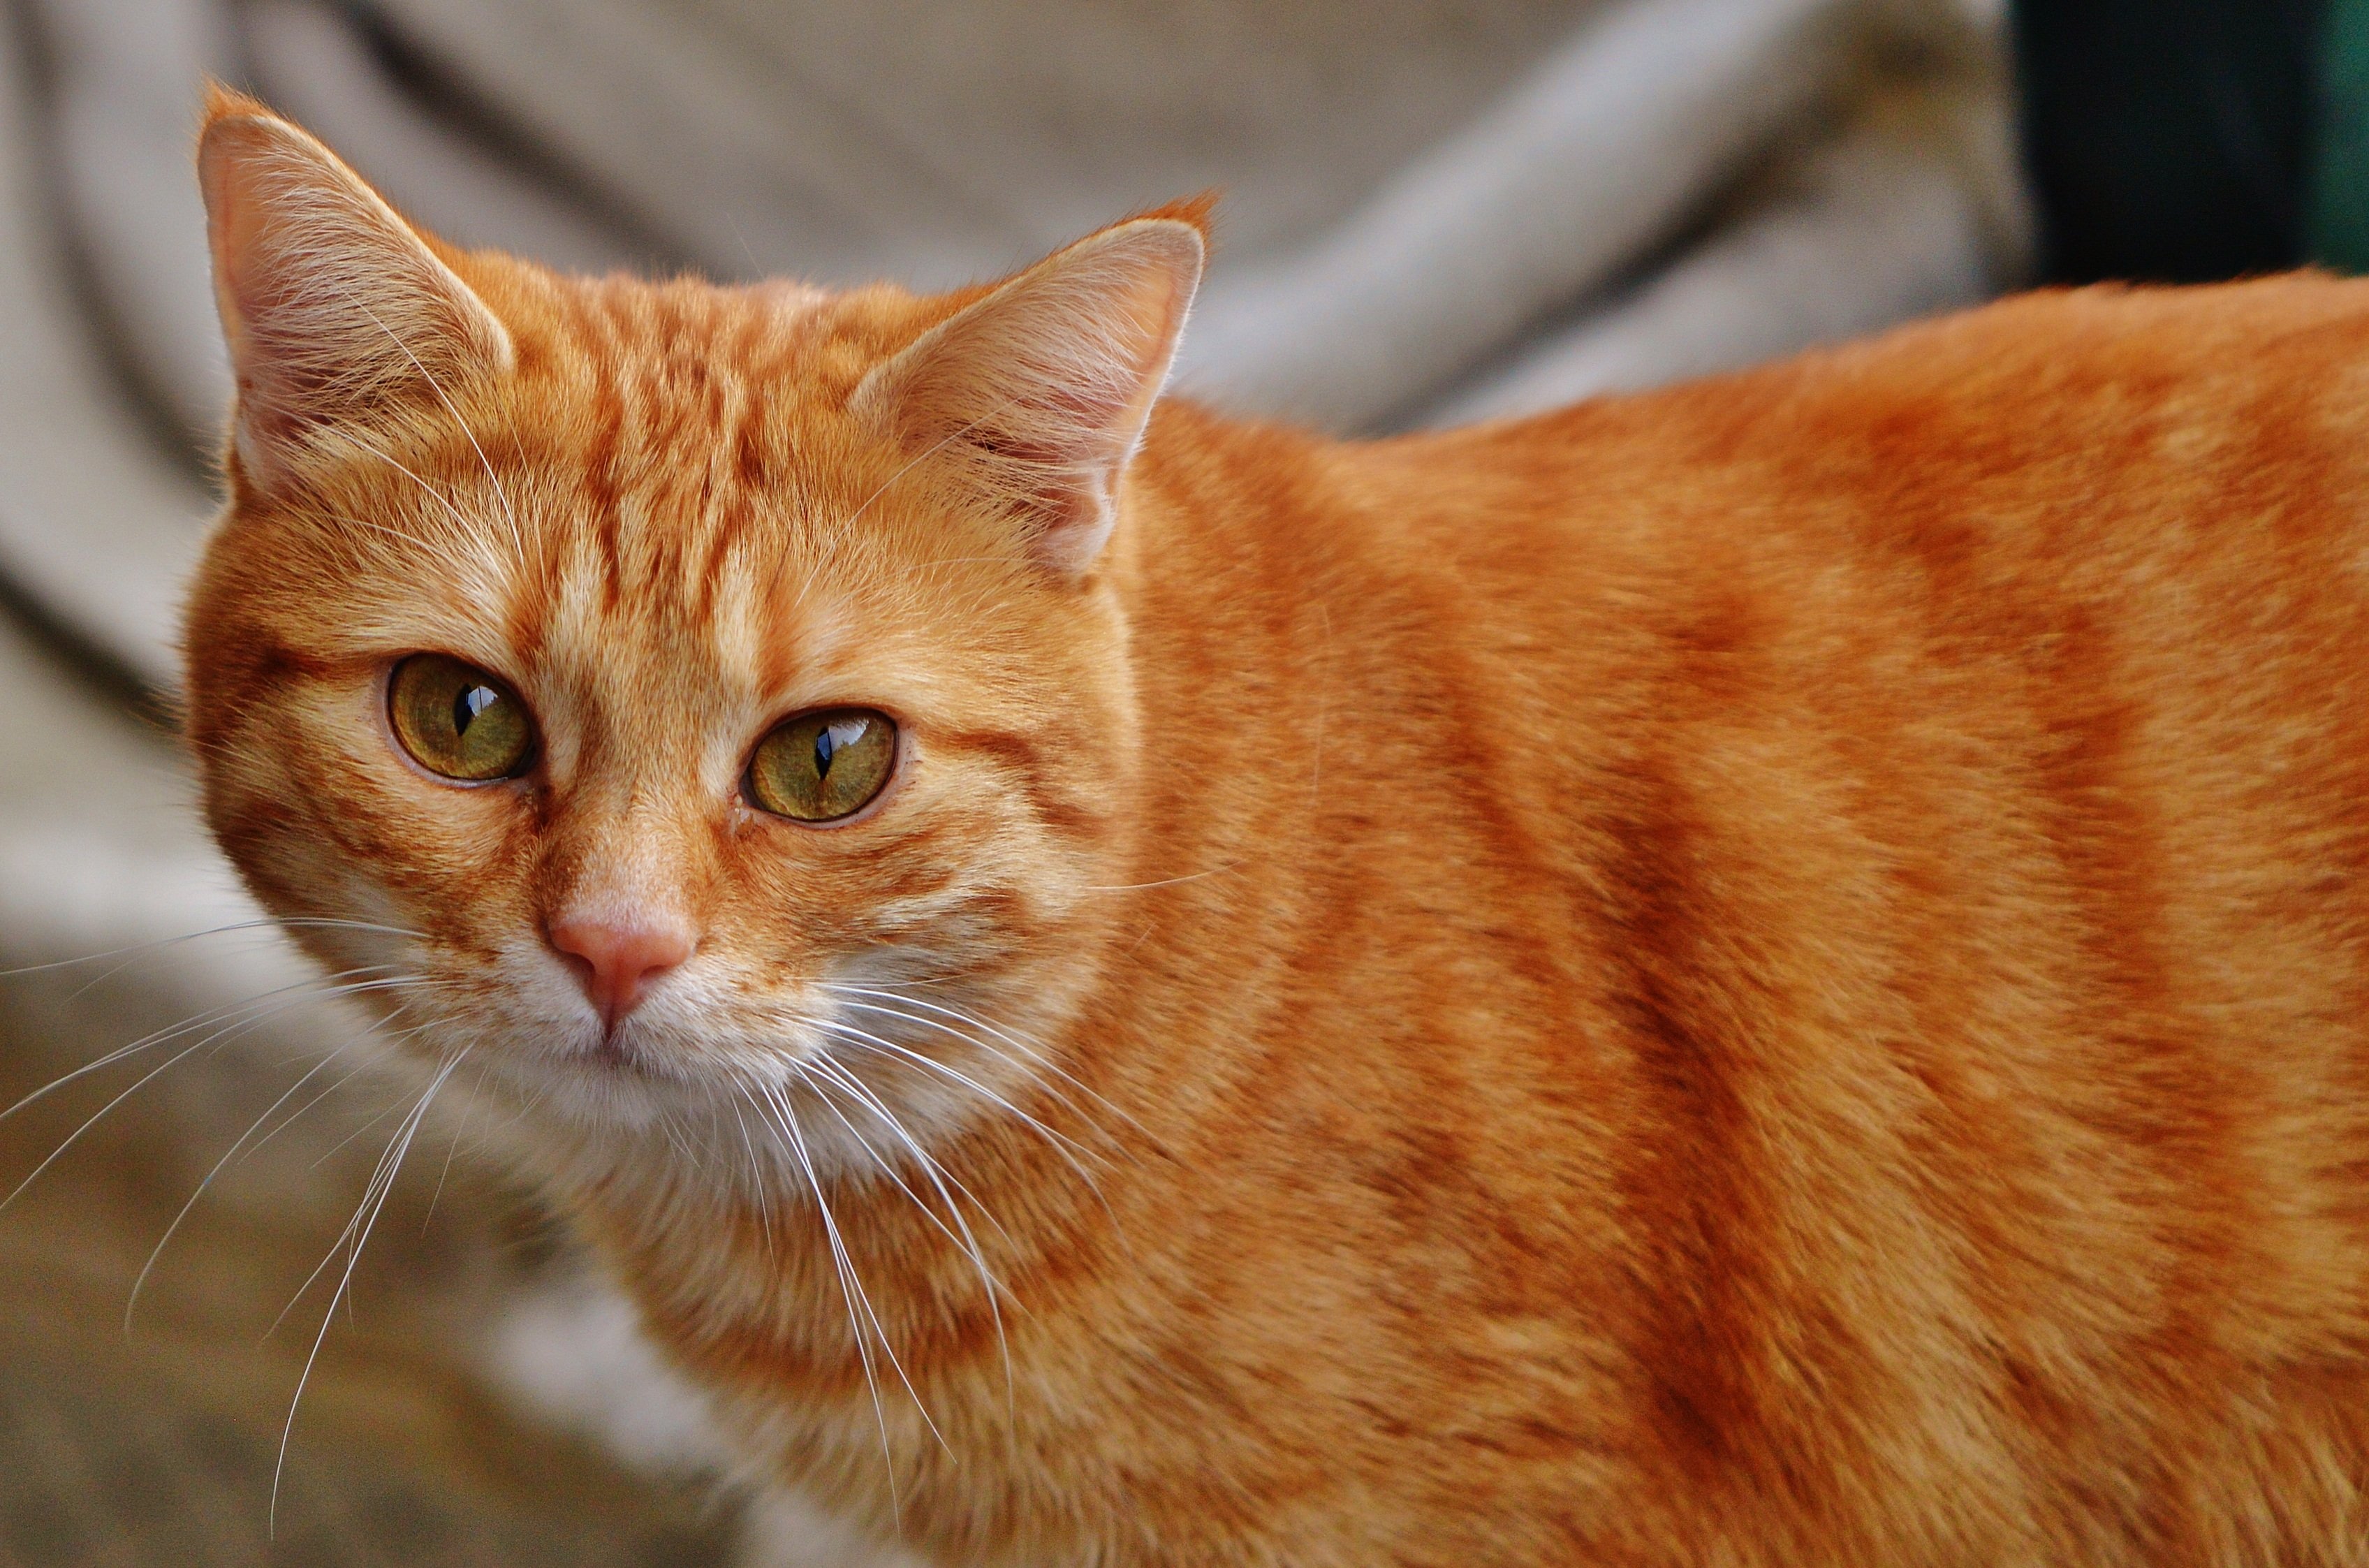 Пестро рыжая. Европейская короткошерстная кошка рыжая. Тигровый макрелевый табби рыжий. Европейская короткошерстная табби рыжий. Британский рыжий кот гладкошерстный.